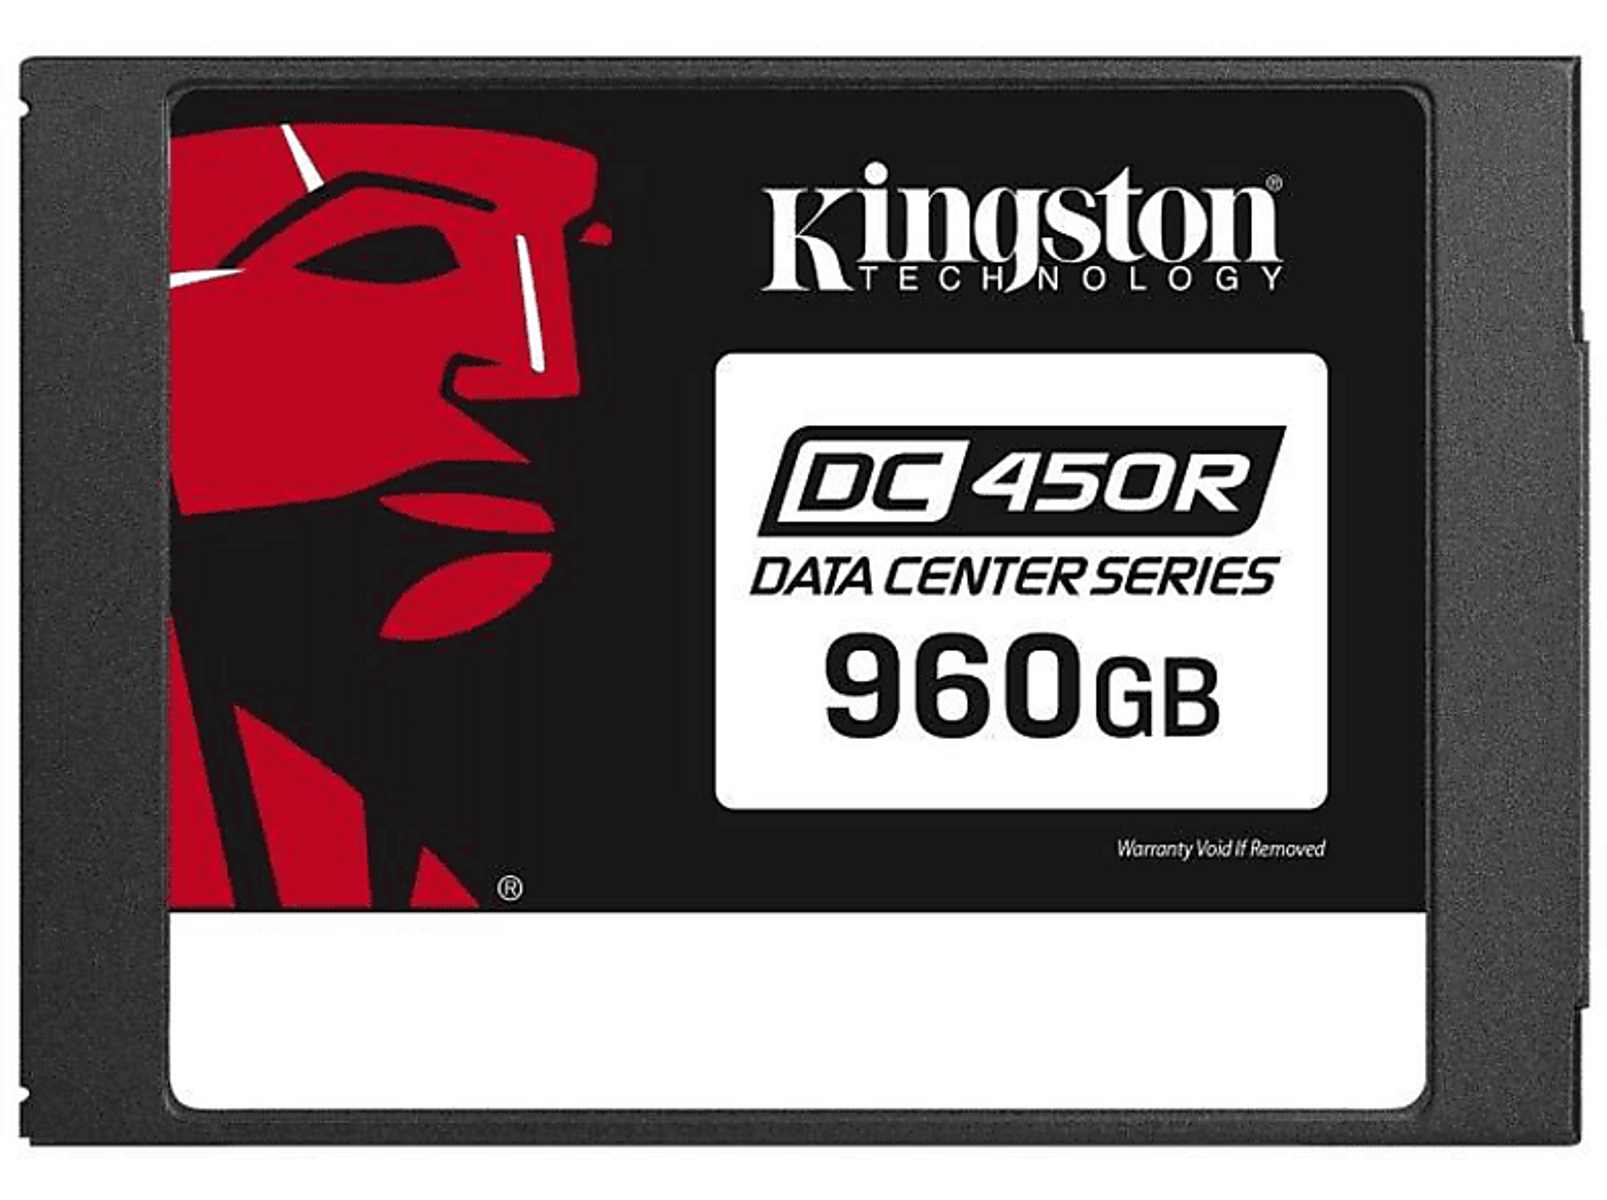 KINGSTON Kingston Data Center 6Gb/s, intern, SATA DC450R - (SSD 960 960GB verschlüsselt), 2,5 GB, intern SSD, Zoll